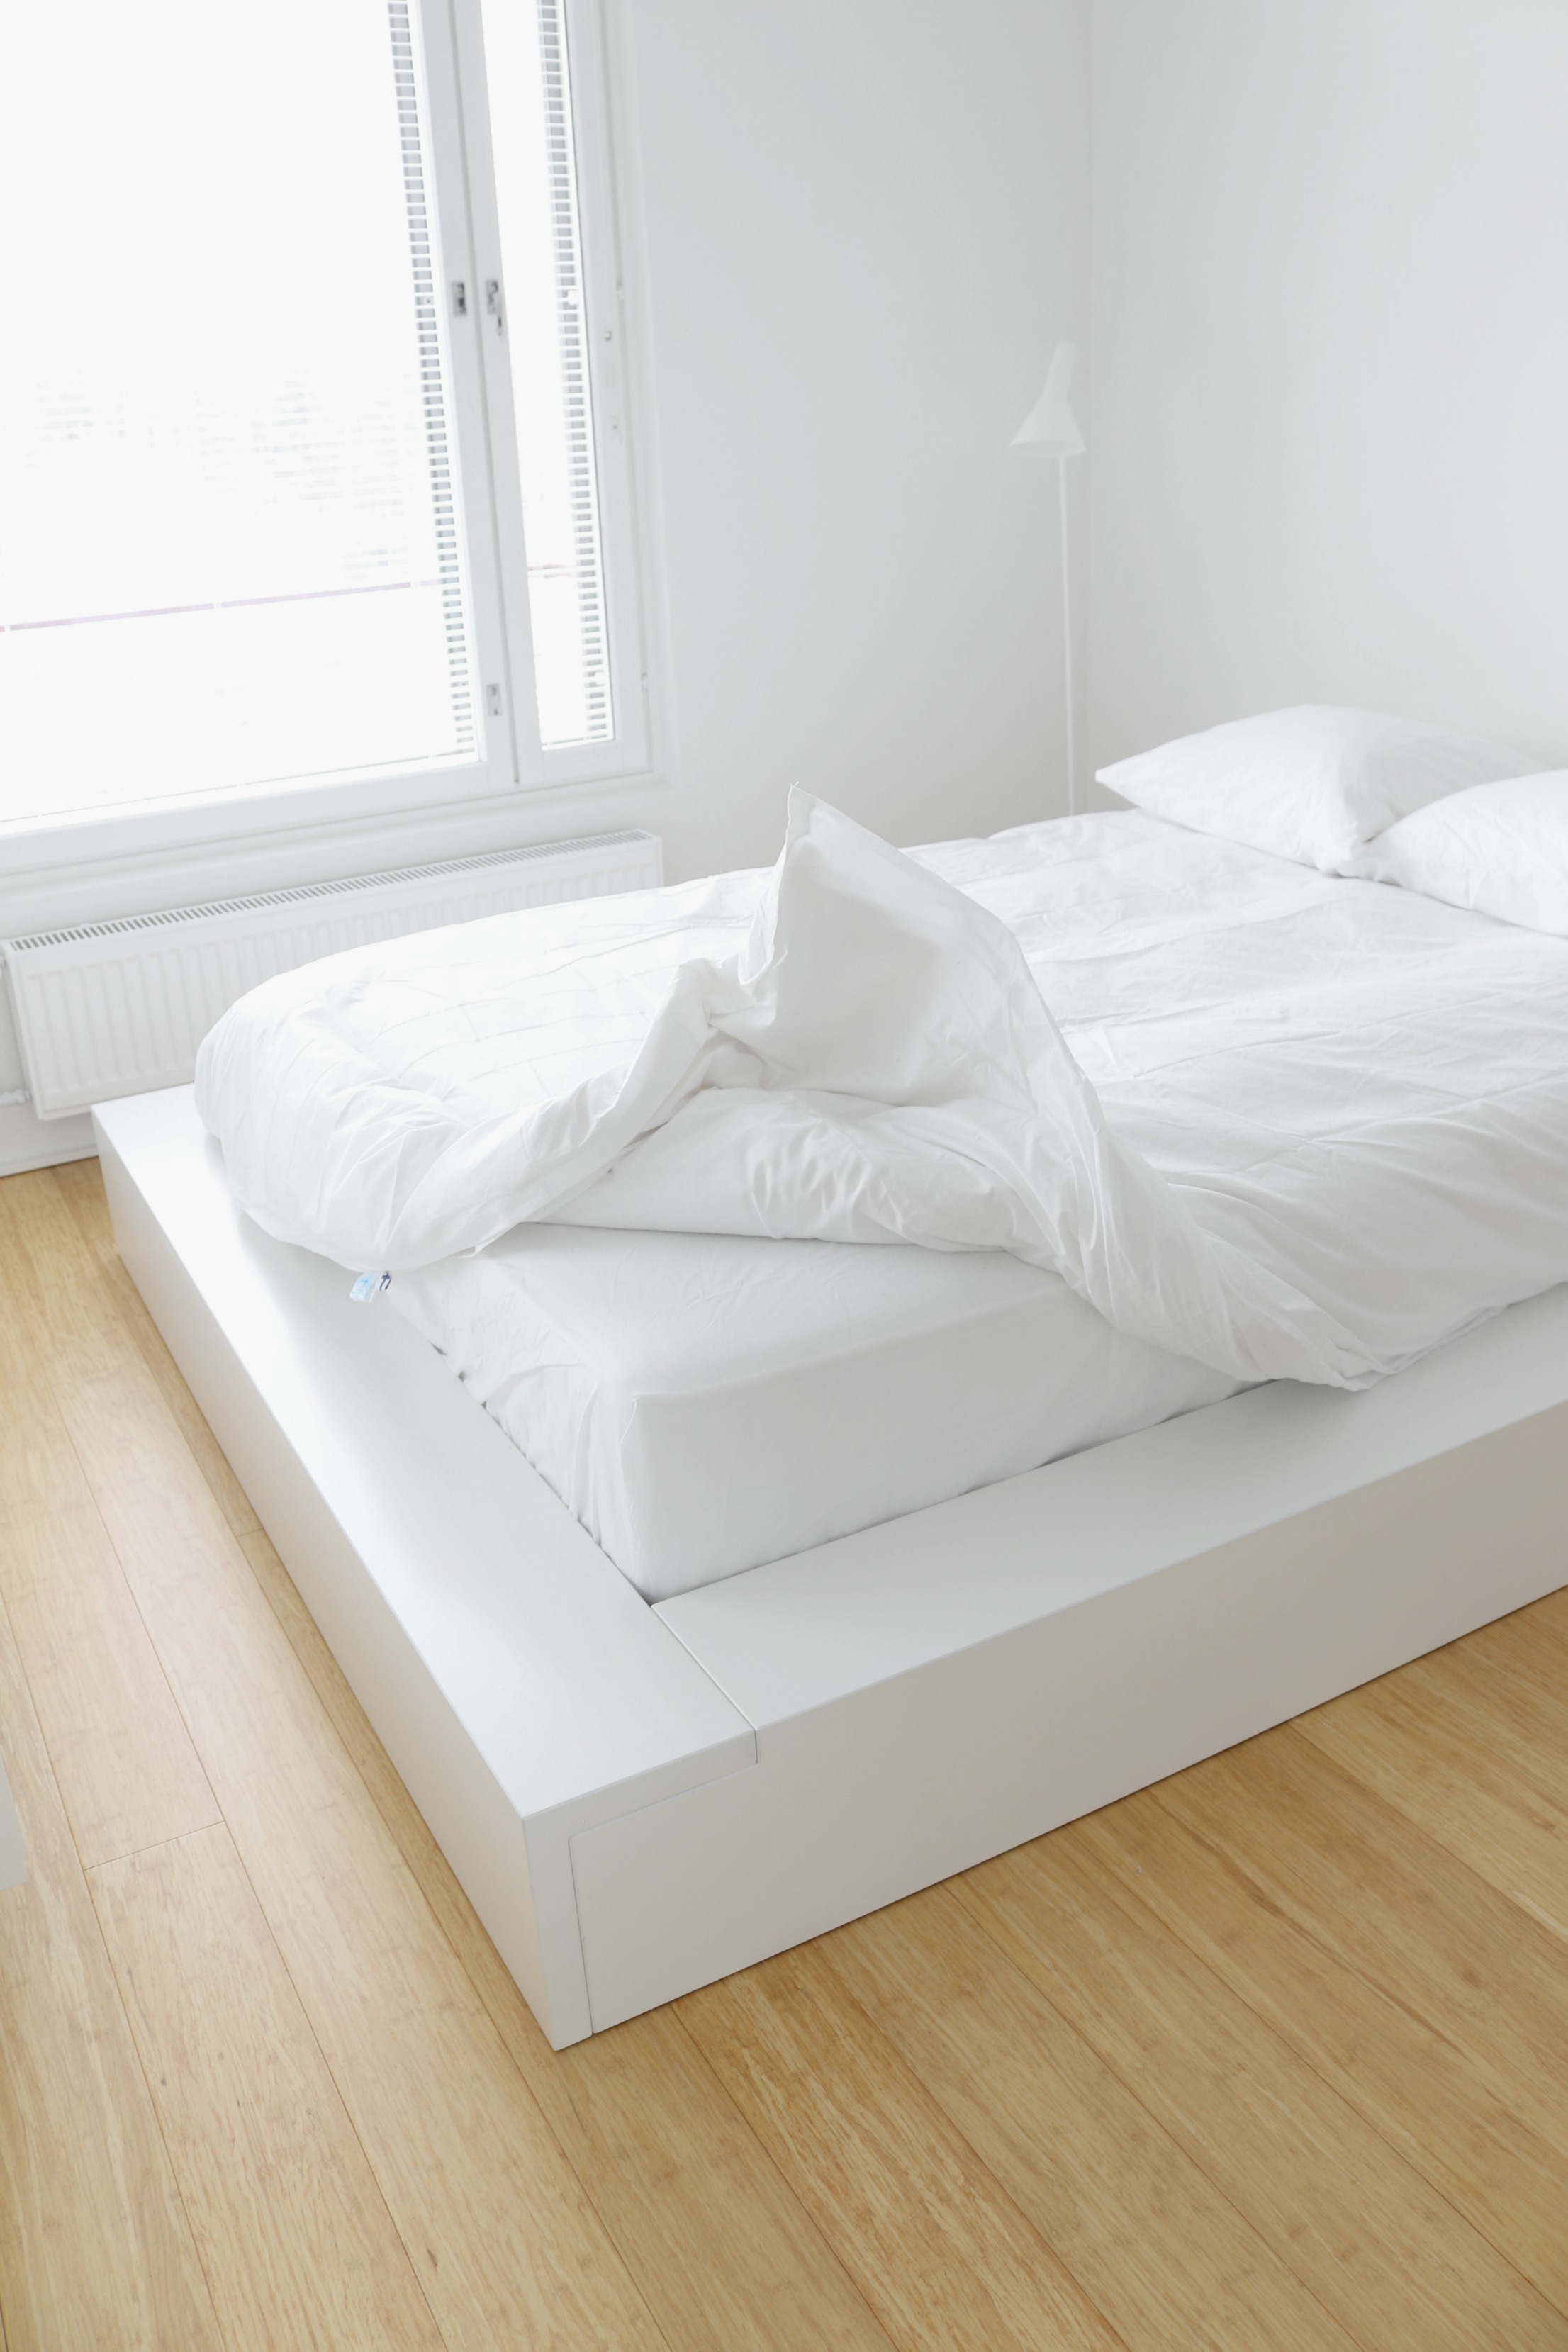 Nukkuville mittatilaussänky kokemuksia - Japanilaistyylinen futon-sänky minimalistinen sisustus - Omakotivalkoinen